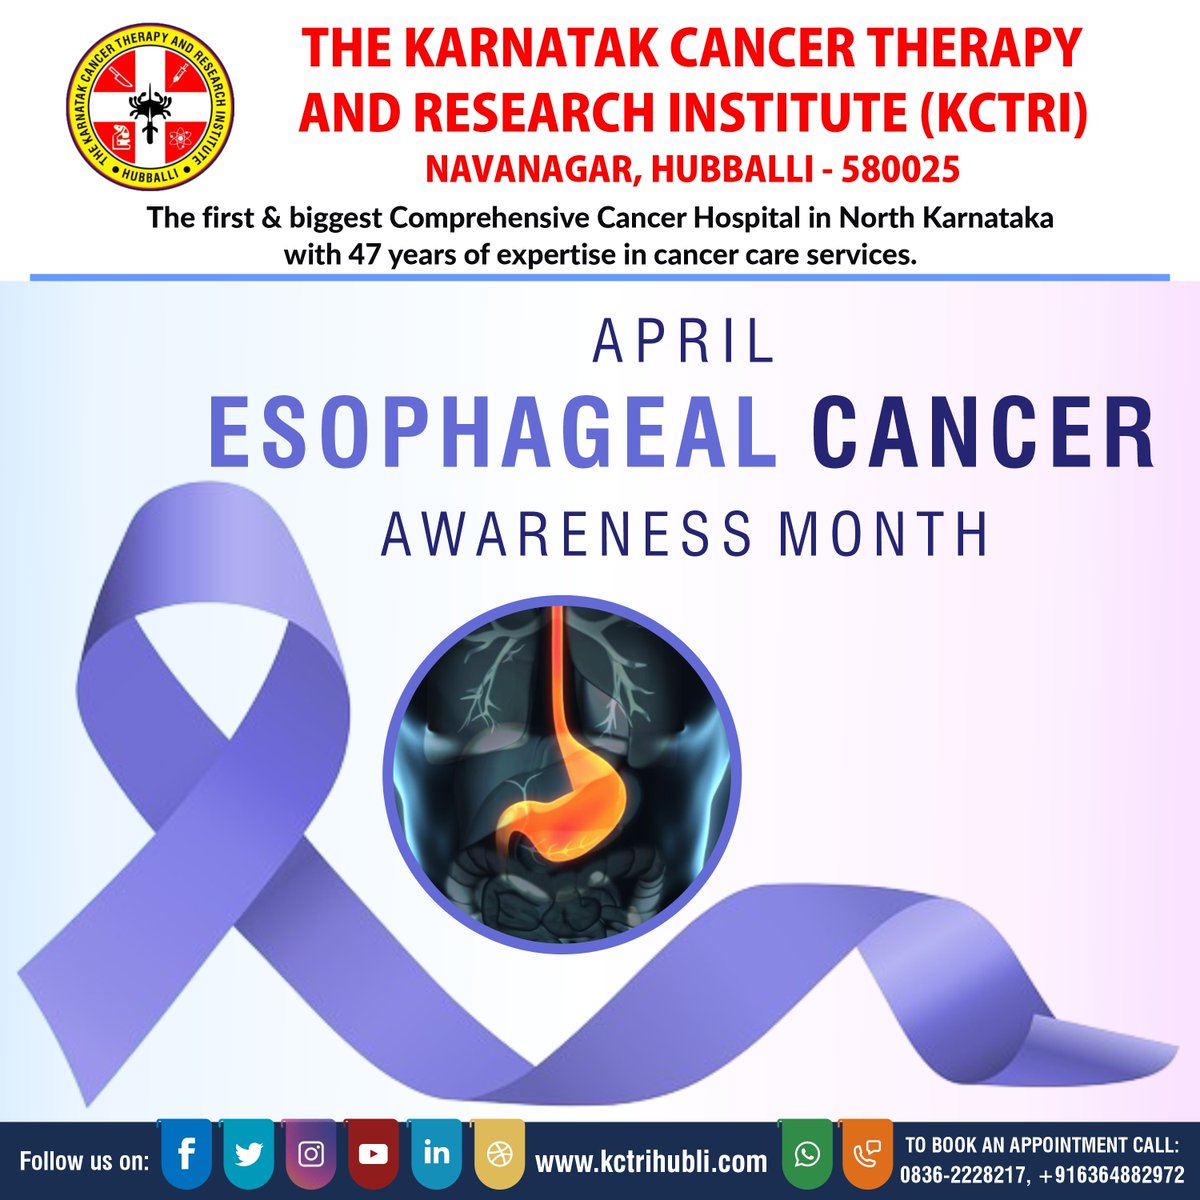 April is Esophageal Cancer Awareness Month.
#EsophagealCancerAwarenessMonth2024 #BeatEsophagealCancer #EsophagealCancerWarrior #earlydetectionsaveslives #kctri #kctrinavanagrhubballi #hublicancerhospital #drbrpatil #kctrihubli #toponcology #bestcancerhospital #bestcancerhospitals